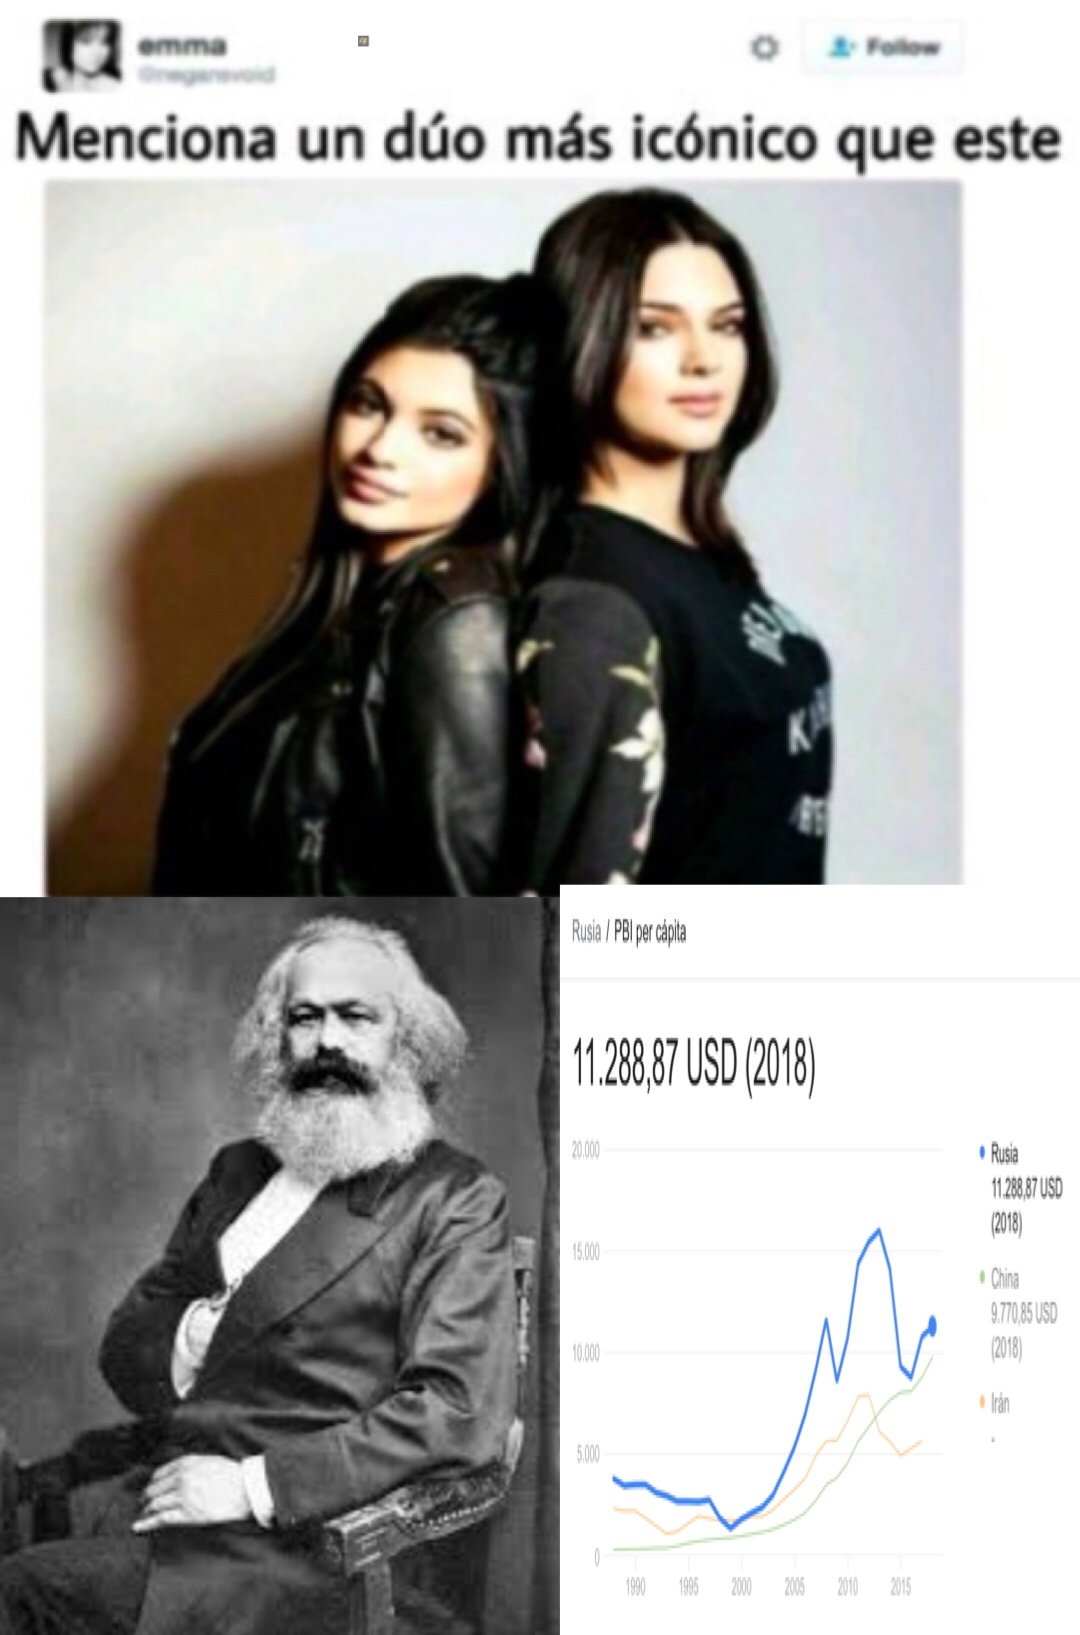 Sogeking PD: La “pareja” serian Marx y la pobreza. Marx fue, durante gran parte de su vida, pobre; y el marxismo sólo creo pobres. - meme